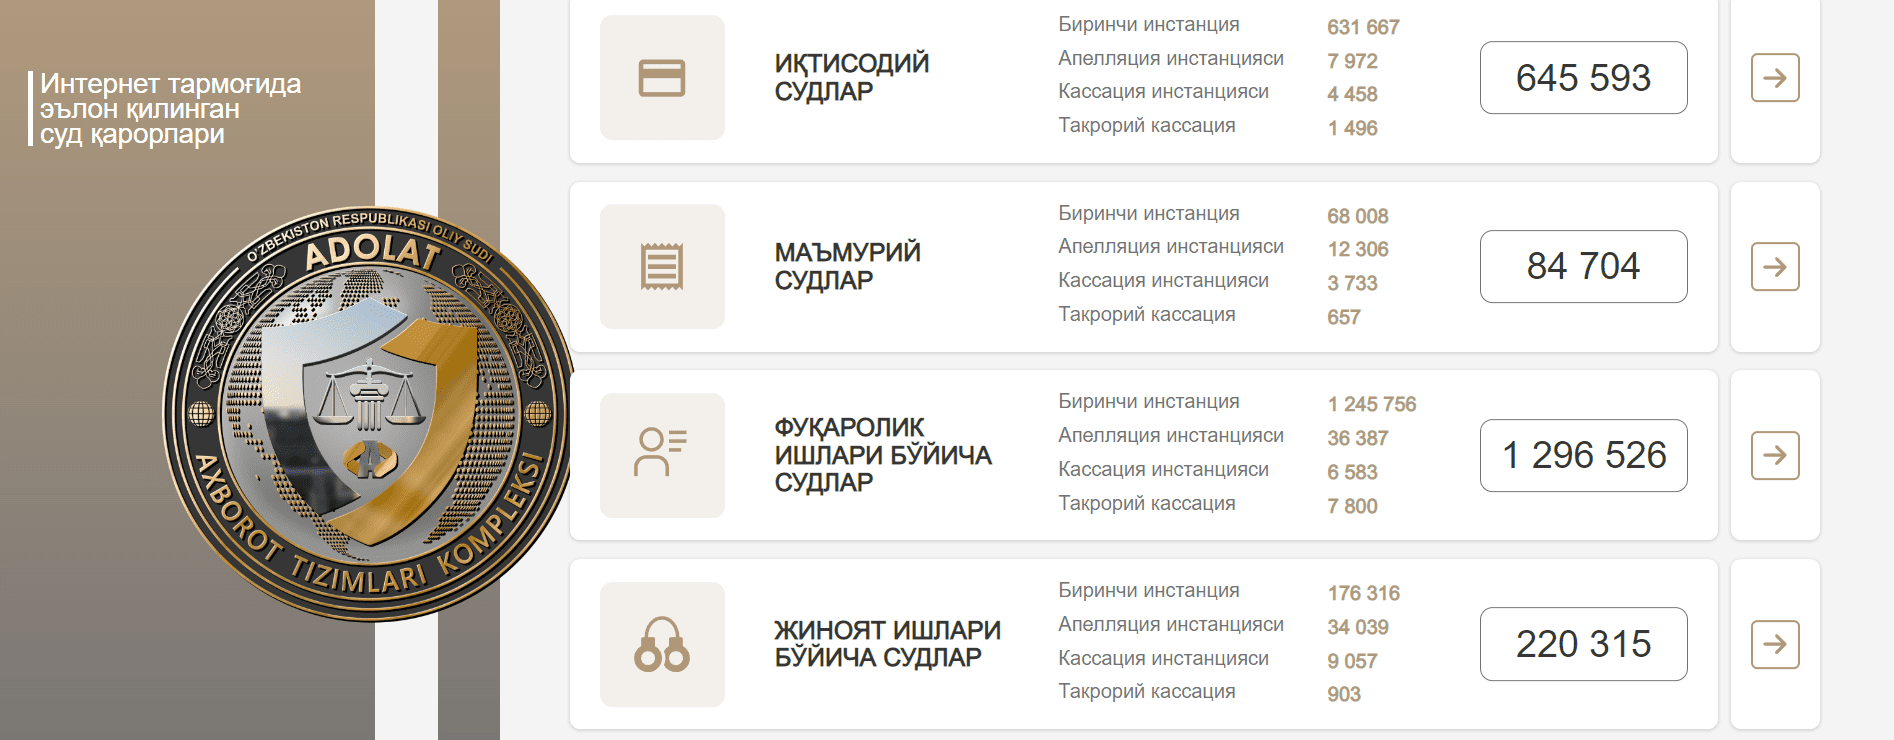 Решения суда опубликованные в Интернете (public.sud.uz)